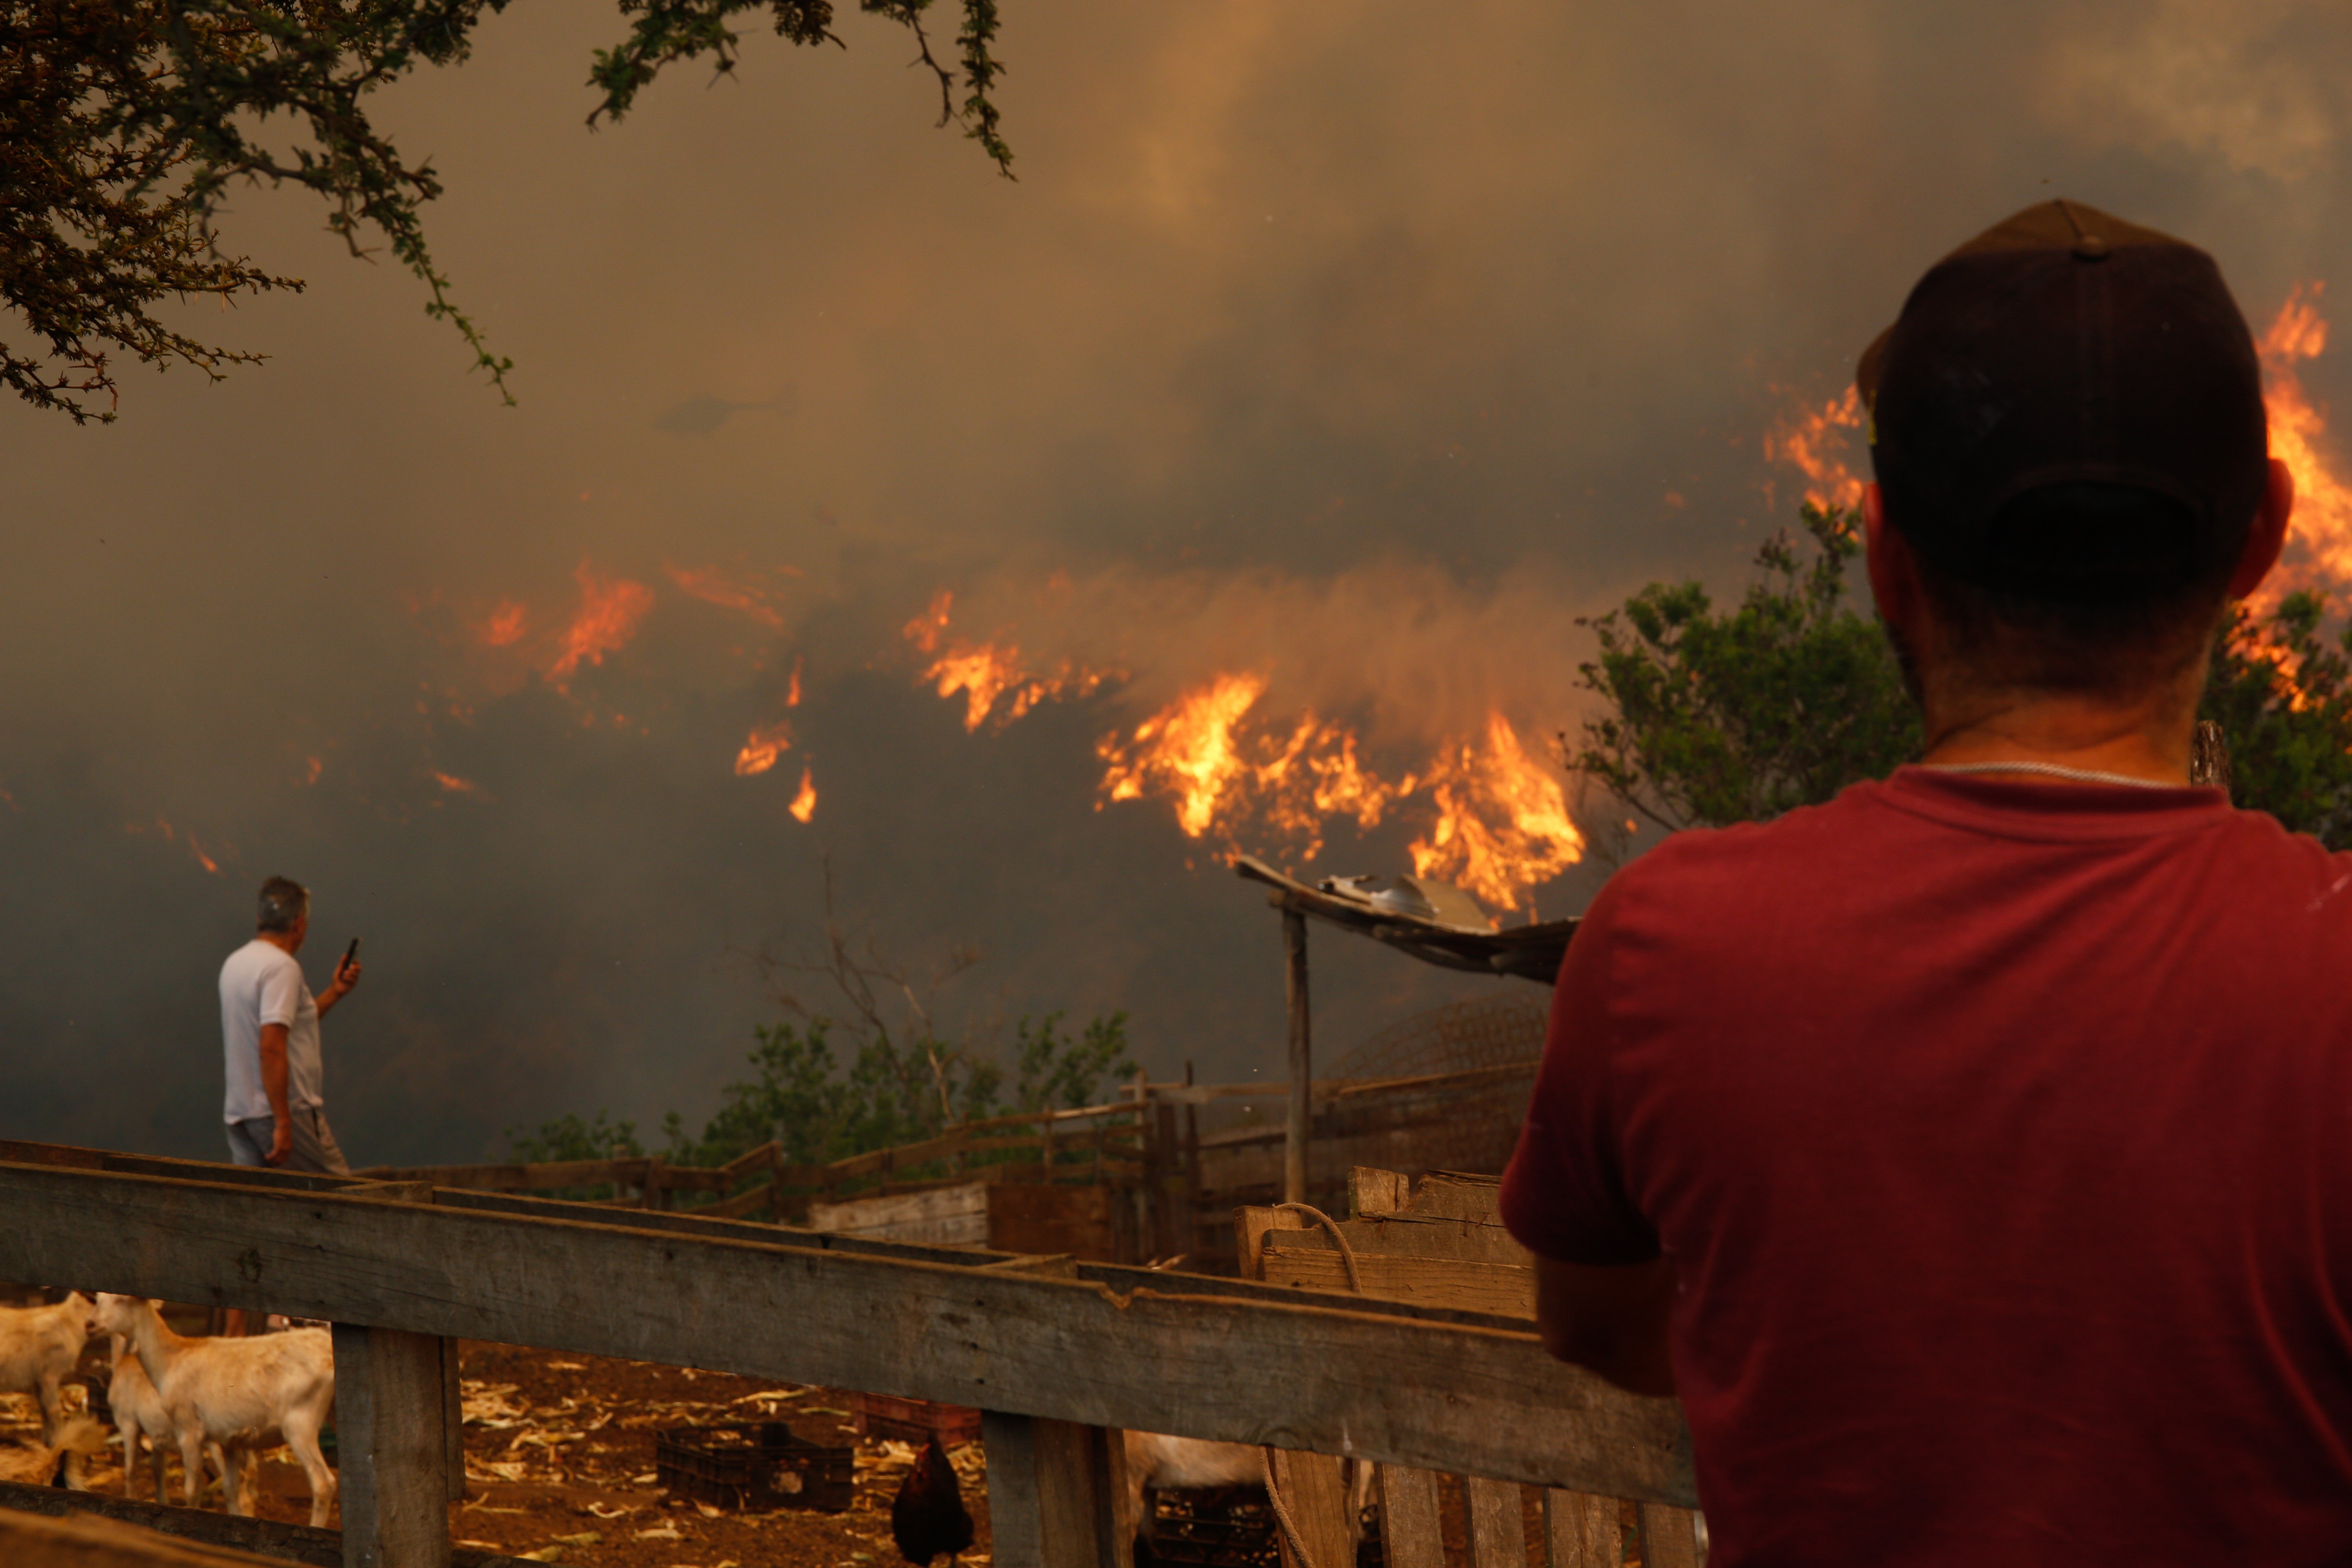 Puja a 64 la xifra de morts pels incendis a Xile i les autoritats avisen: "Creixerà significativament"